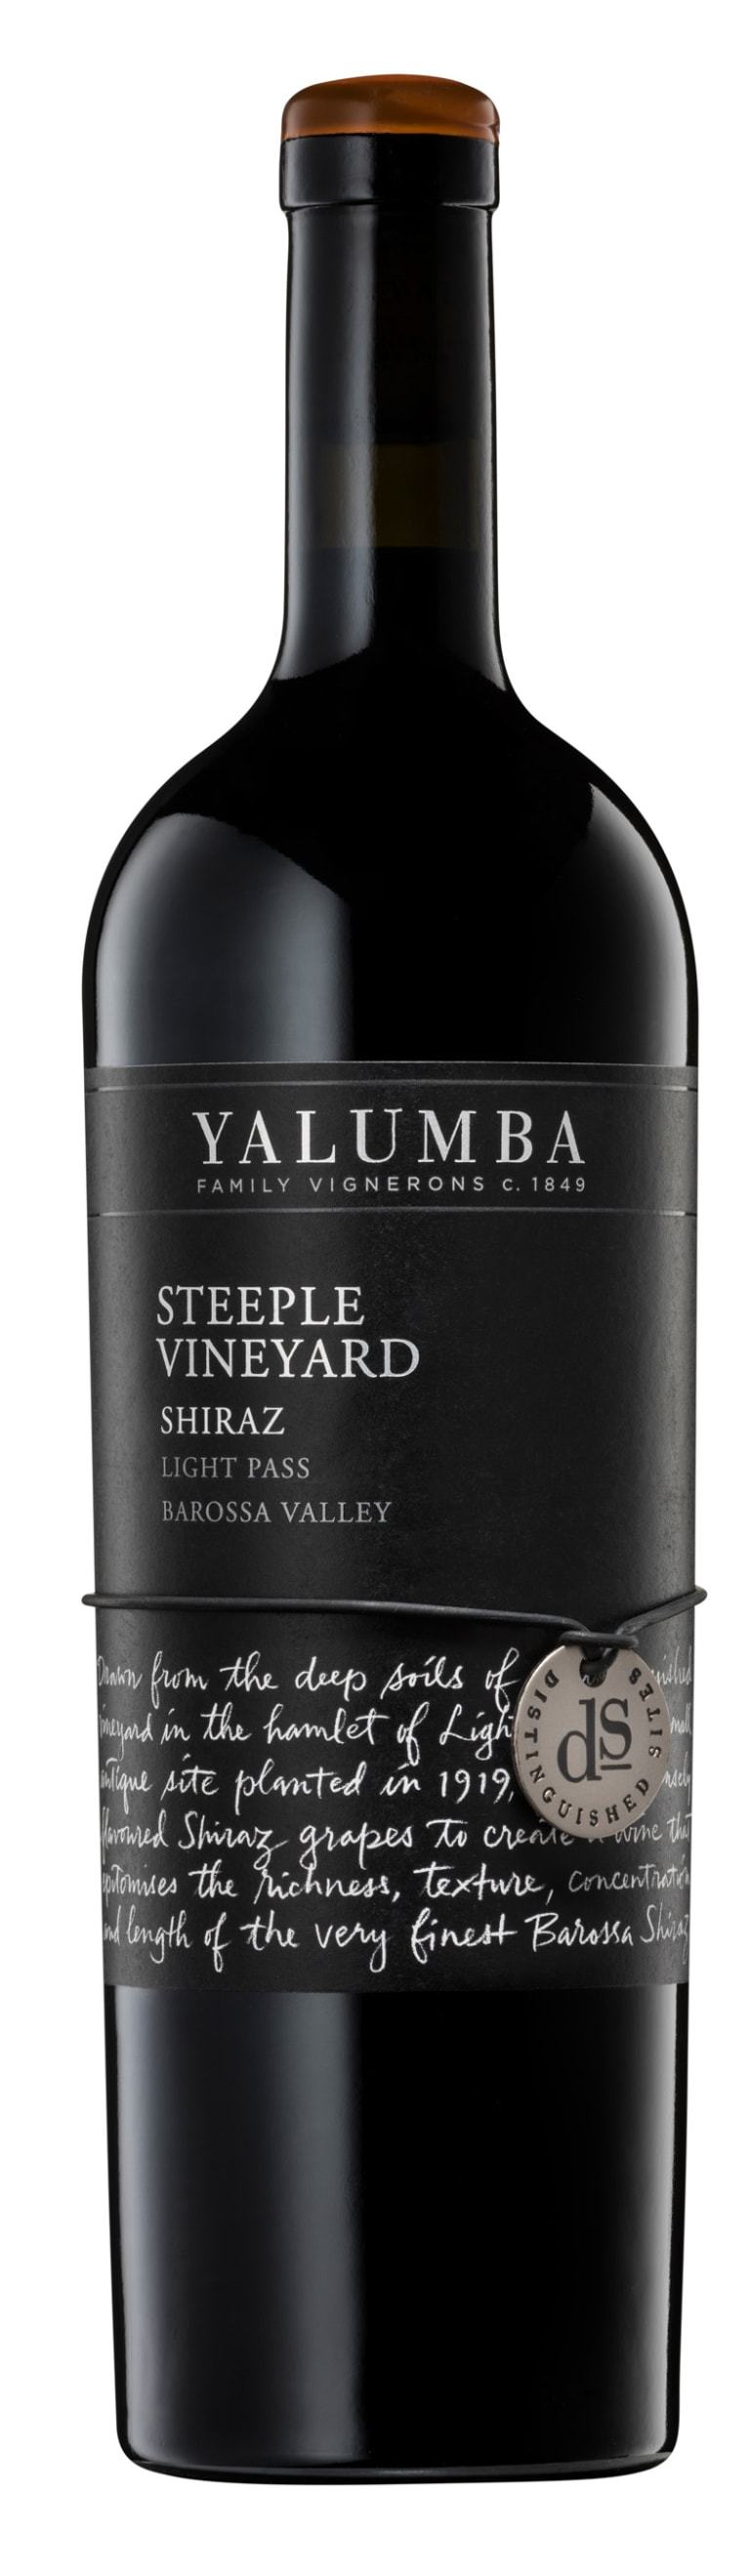 Yalumba Shiraz Steeple Vineyard 2015